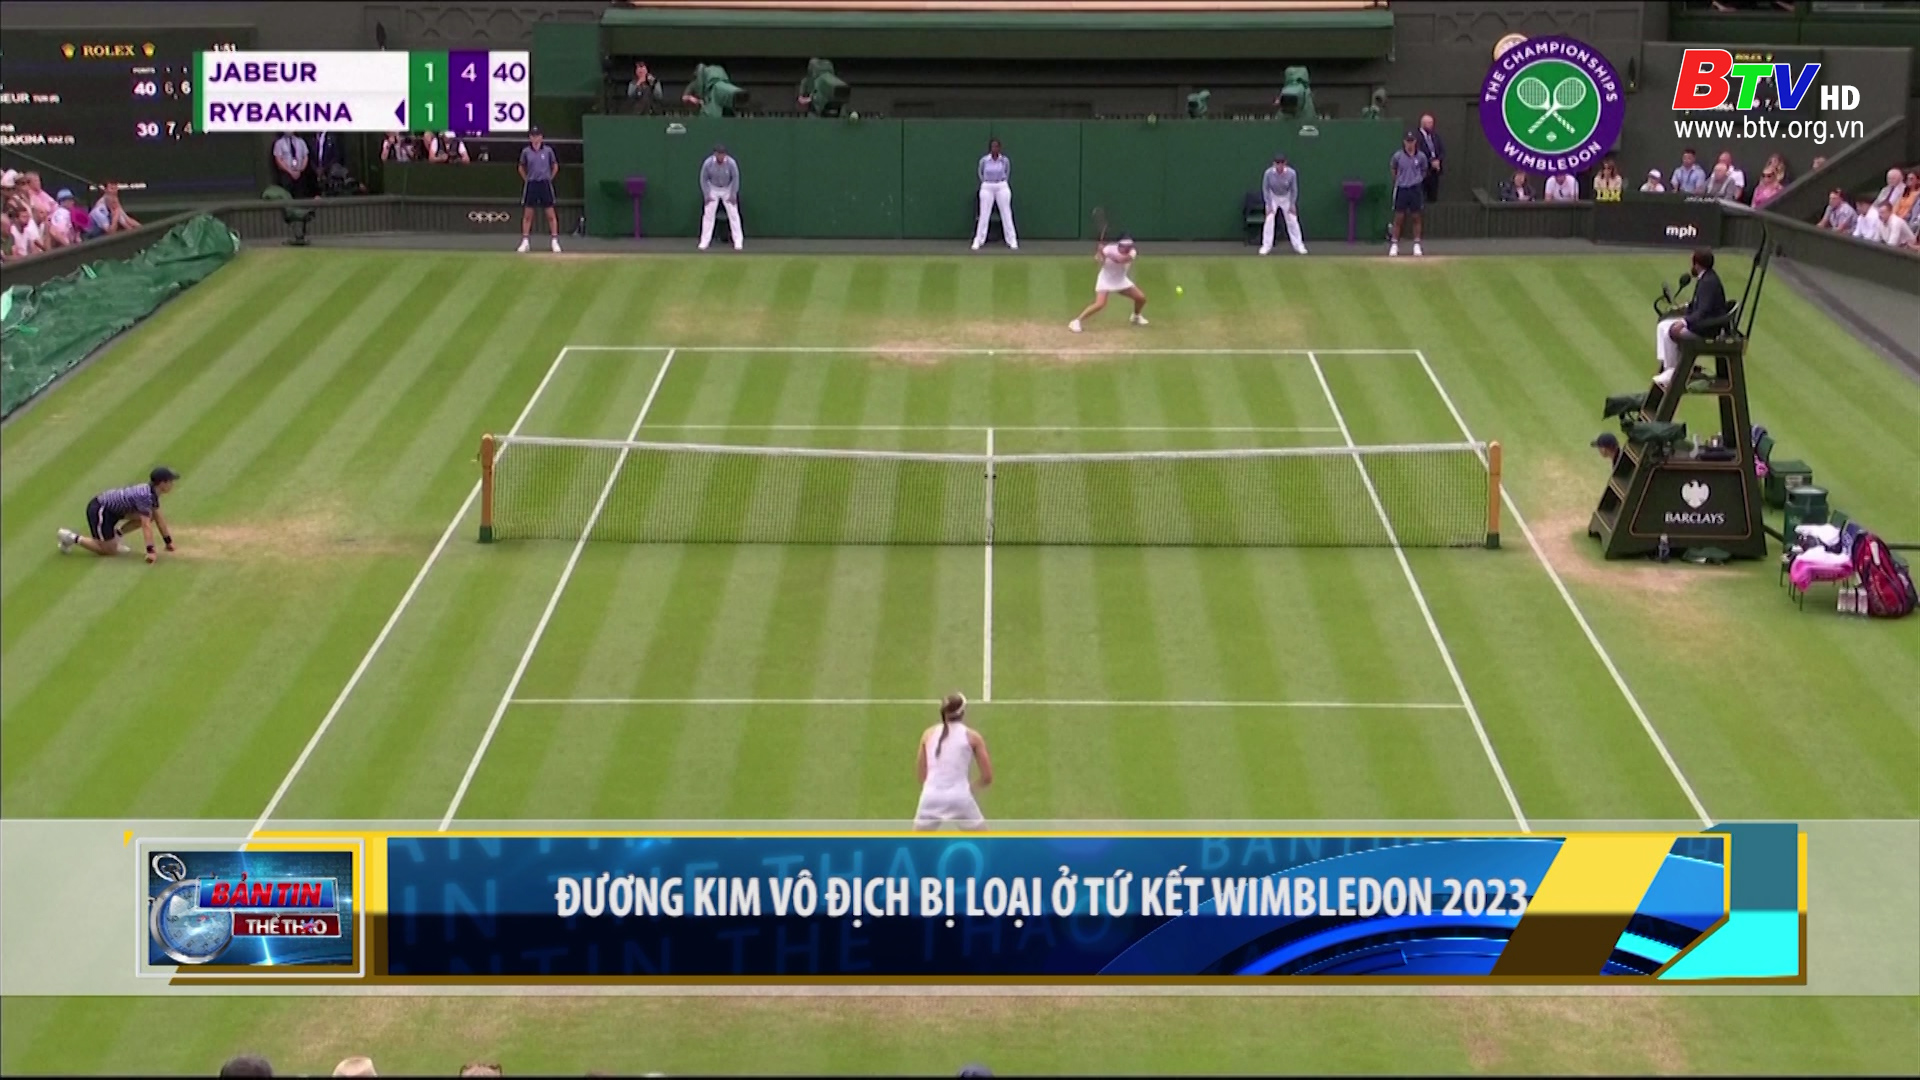 Đương kim vô địch bị loại ở tứ kết Wimbledon 2023